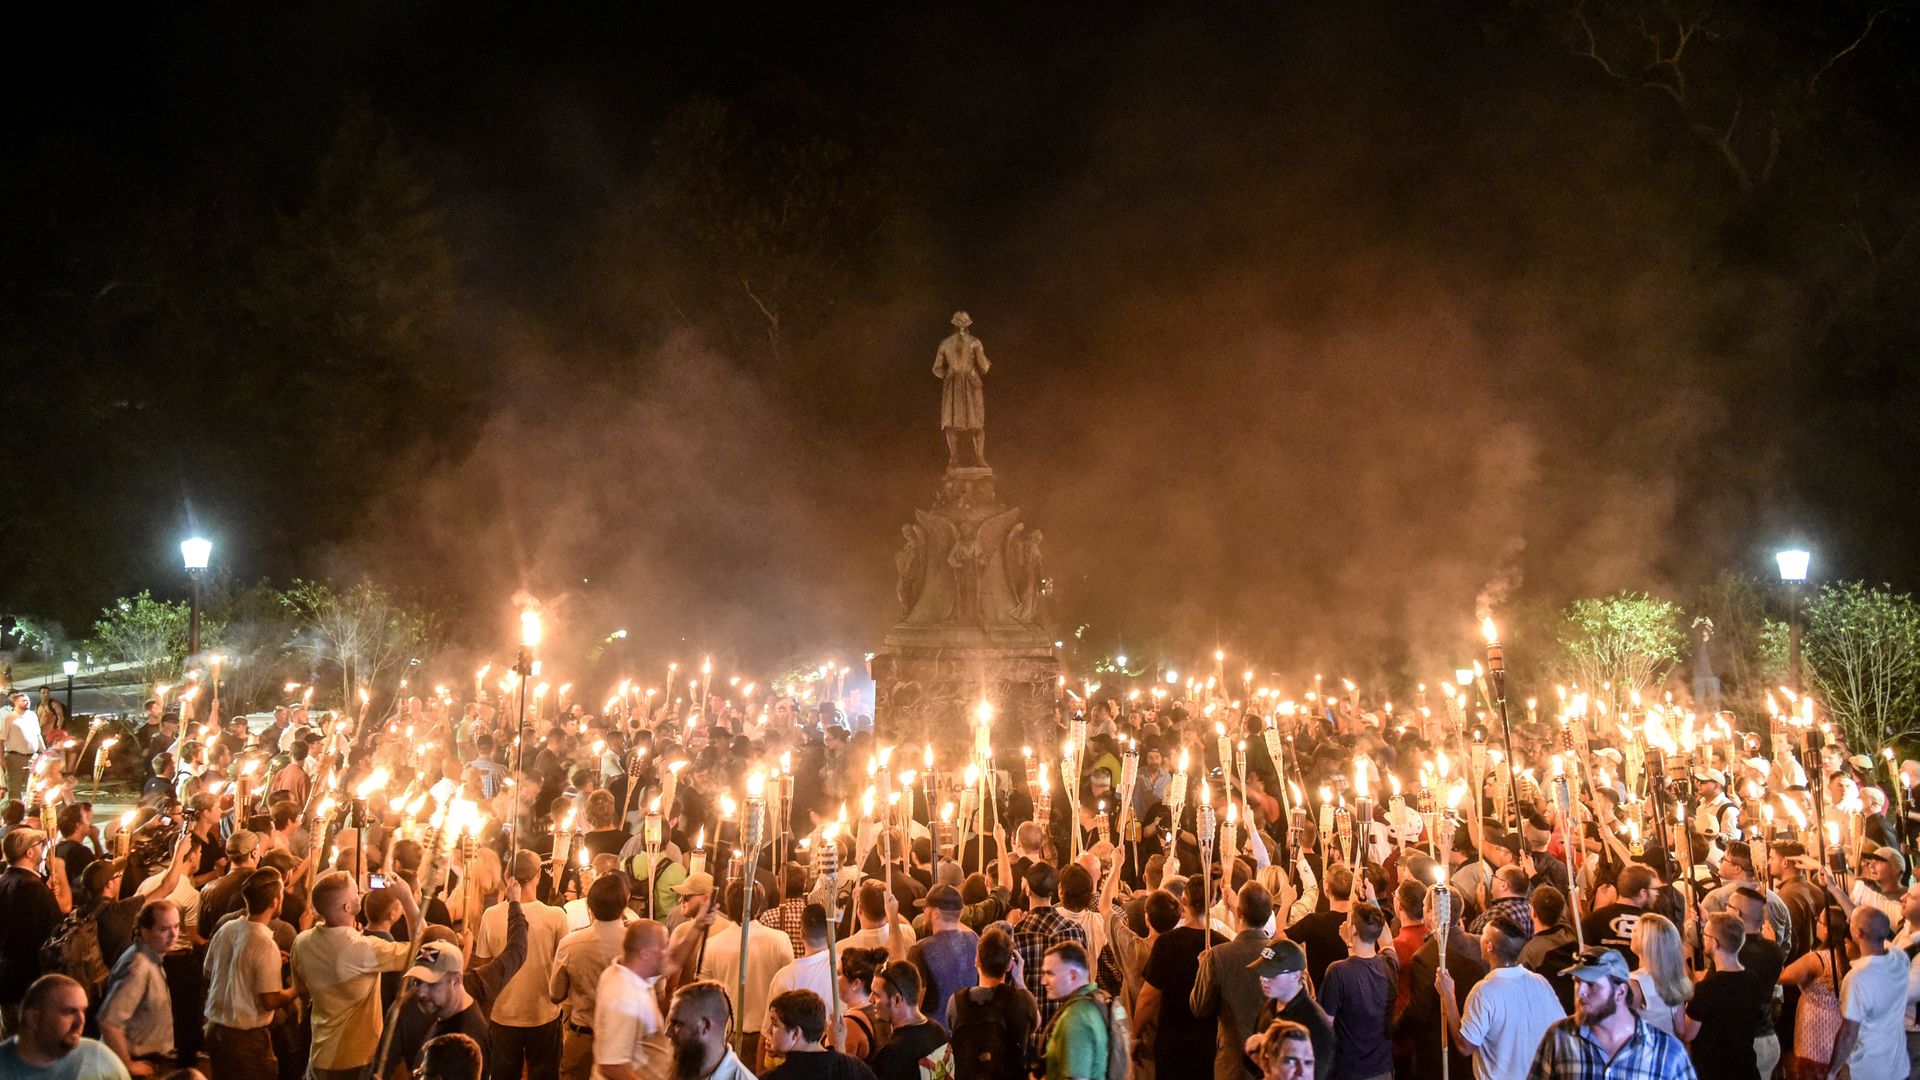 »mehr hass« – trump vergleicht proteste an unis mit neonazi-märschen